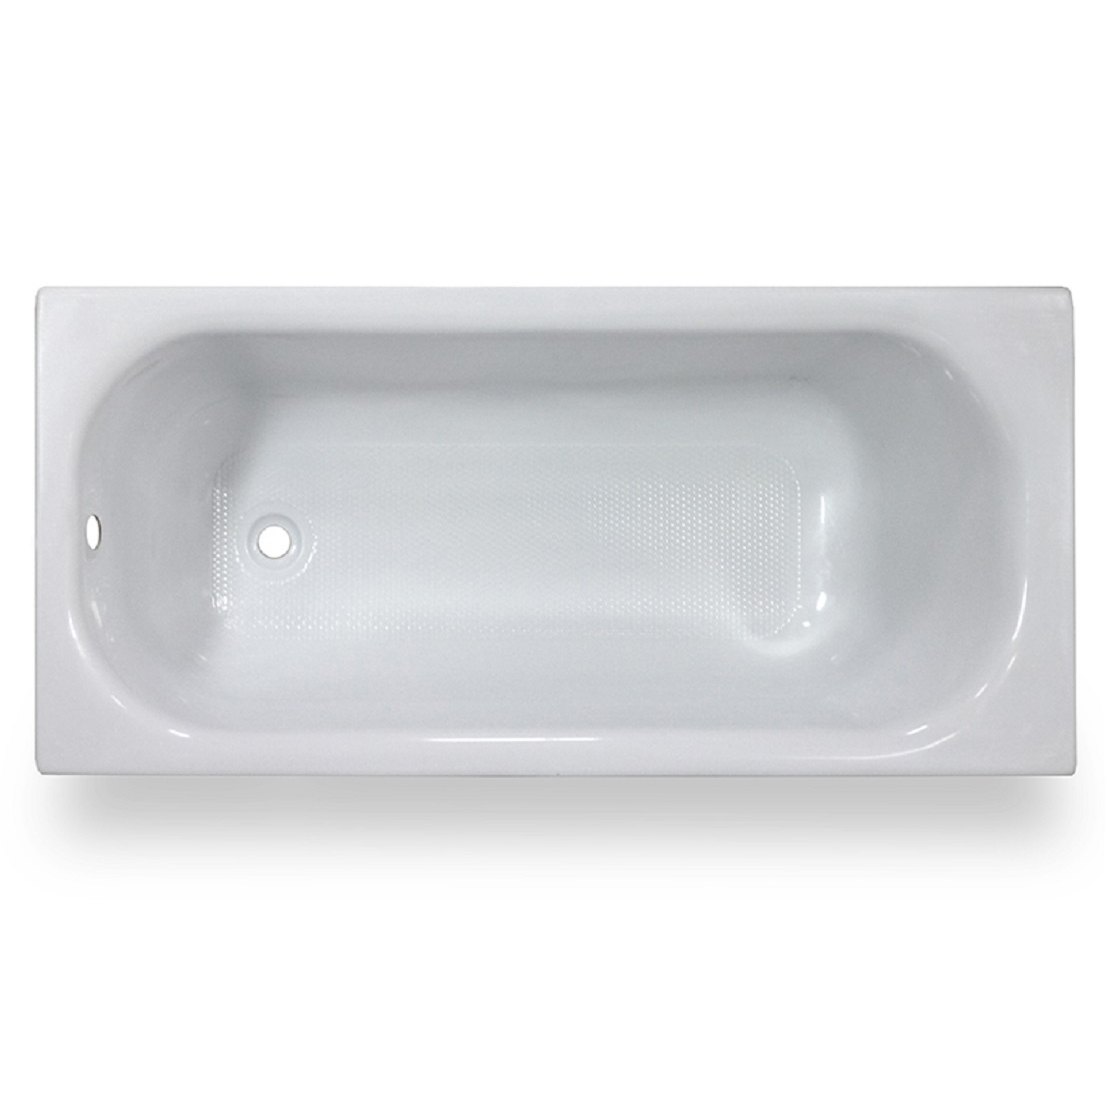 Акриловая ванна Тритон Ультра 130, цвет белый Щ0000017401 - фото 1